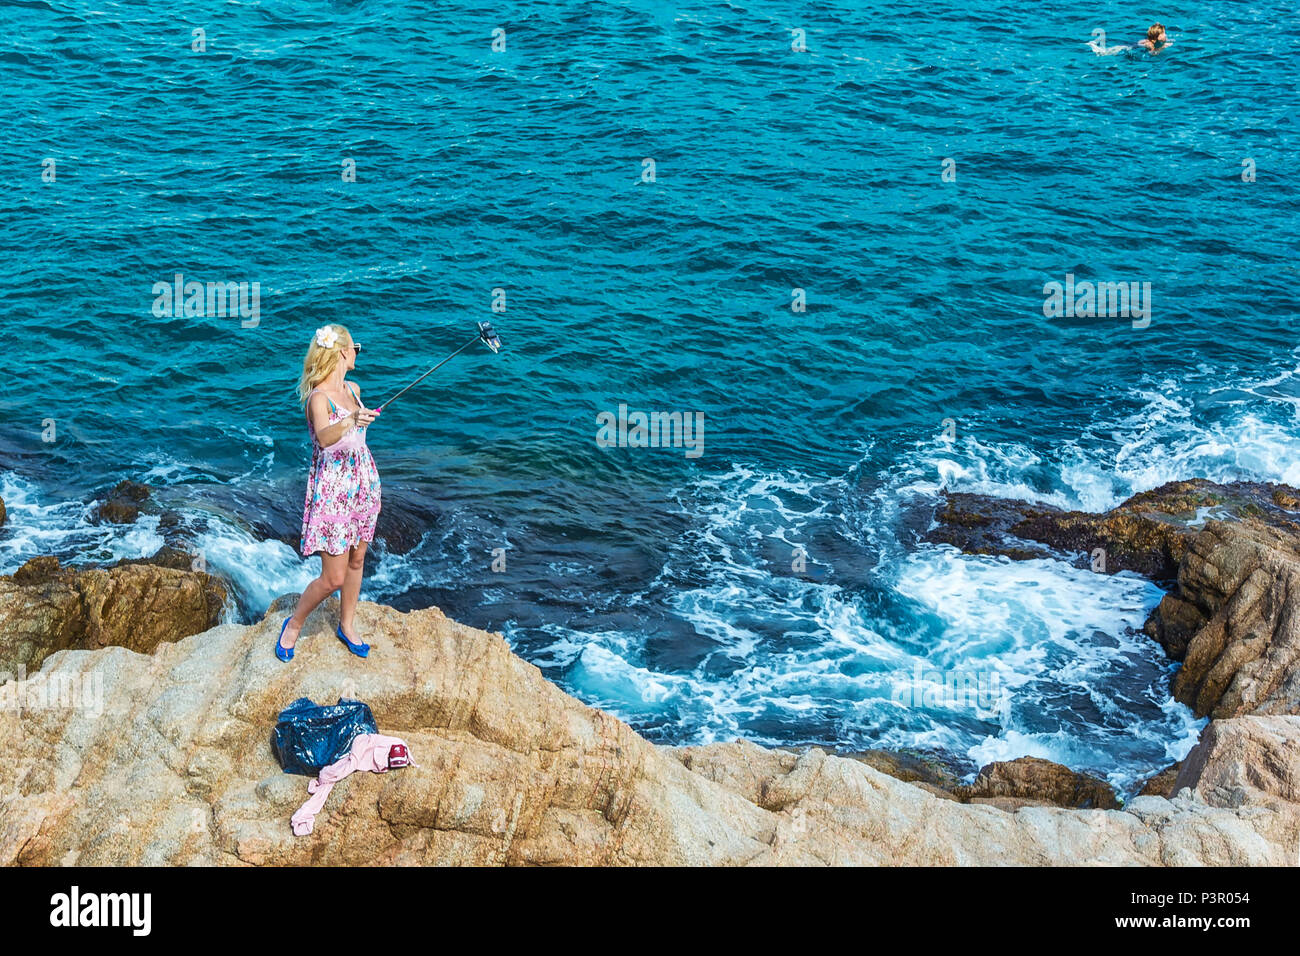 L'Espagne, Lloret de Mar - 19 septembre 2017 : autoportraits debout sur des pierres près de la mer Banque D'Images